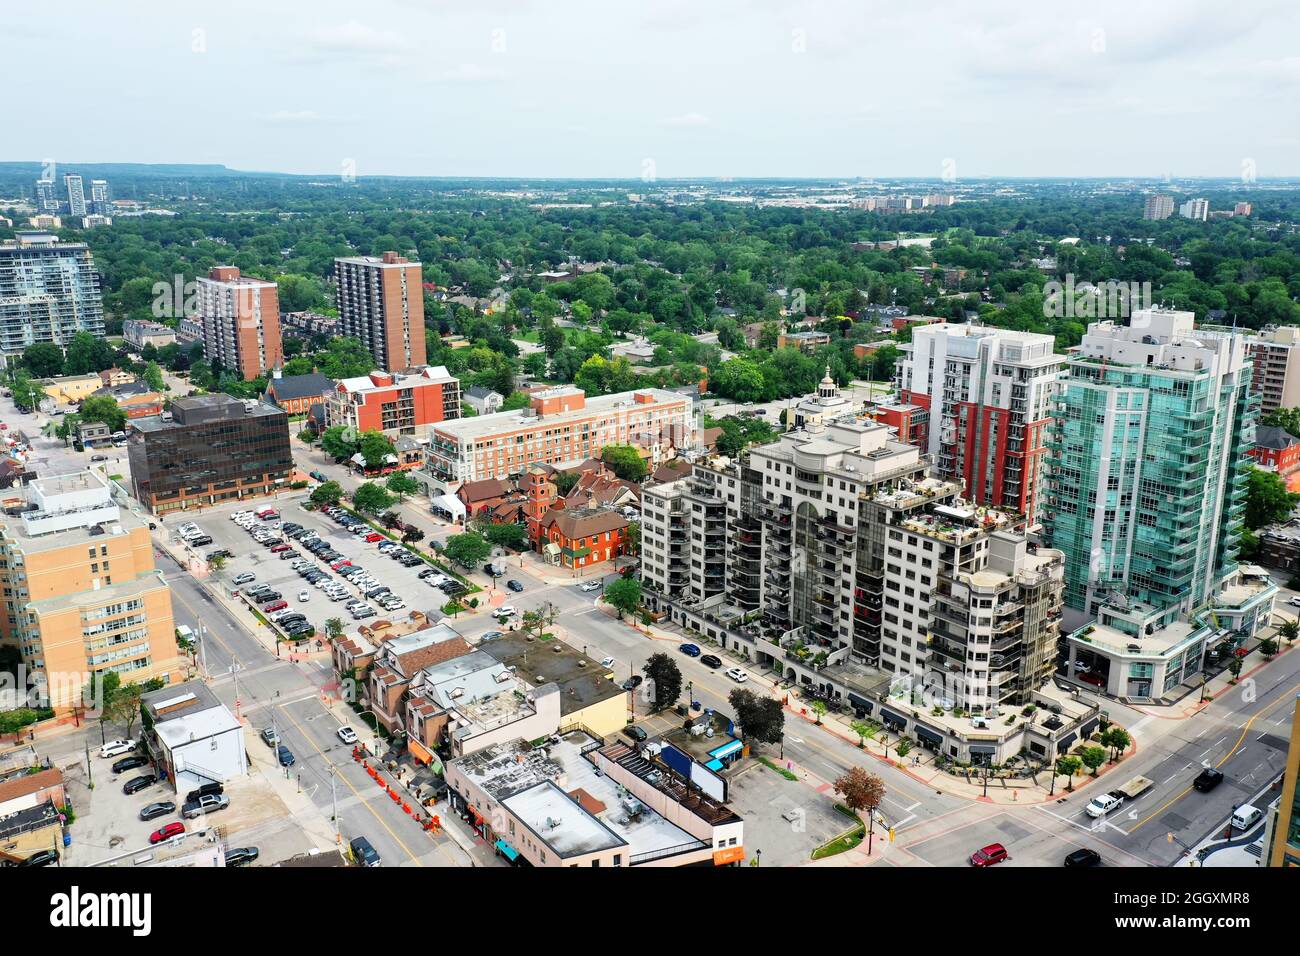 An aerial view in Burlington, Ontario, Canada Stock Photo